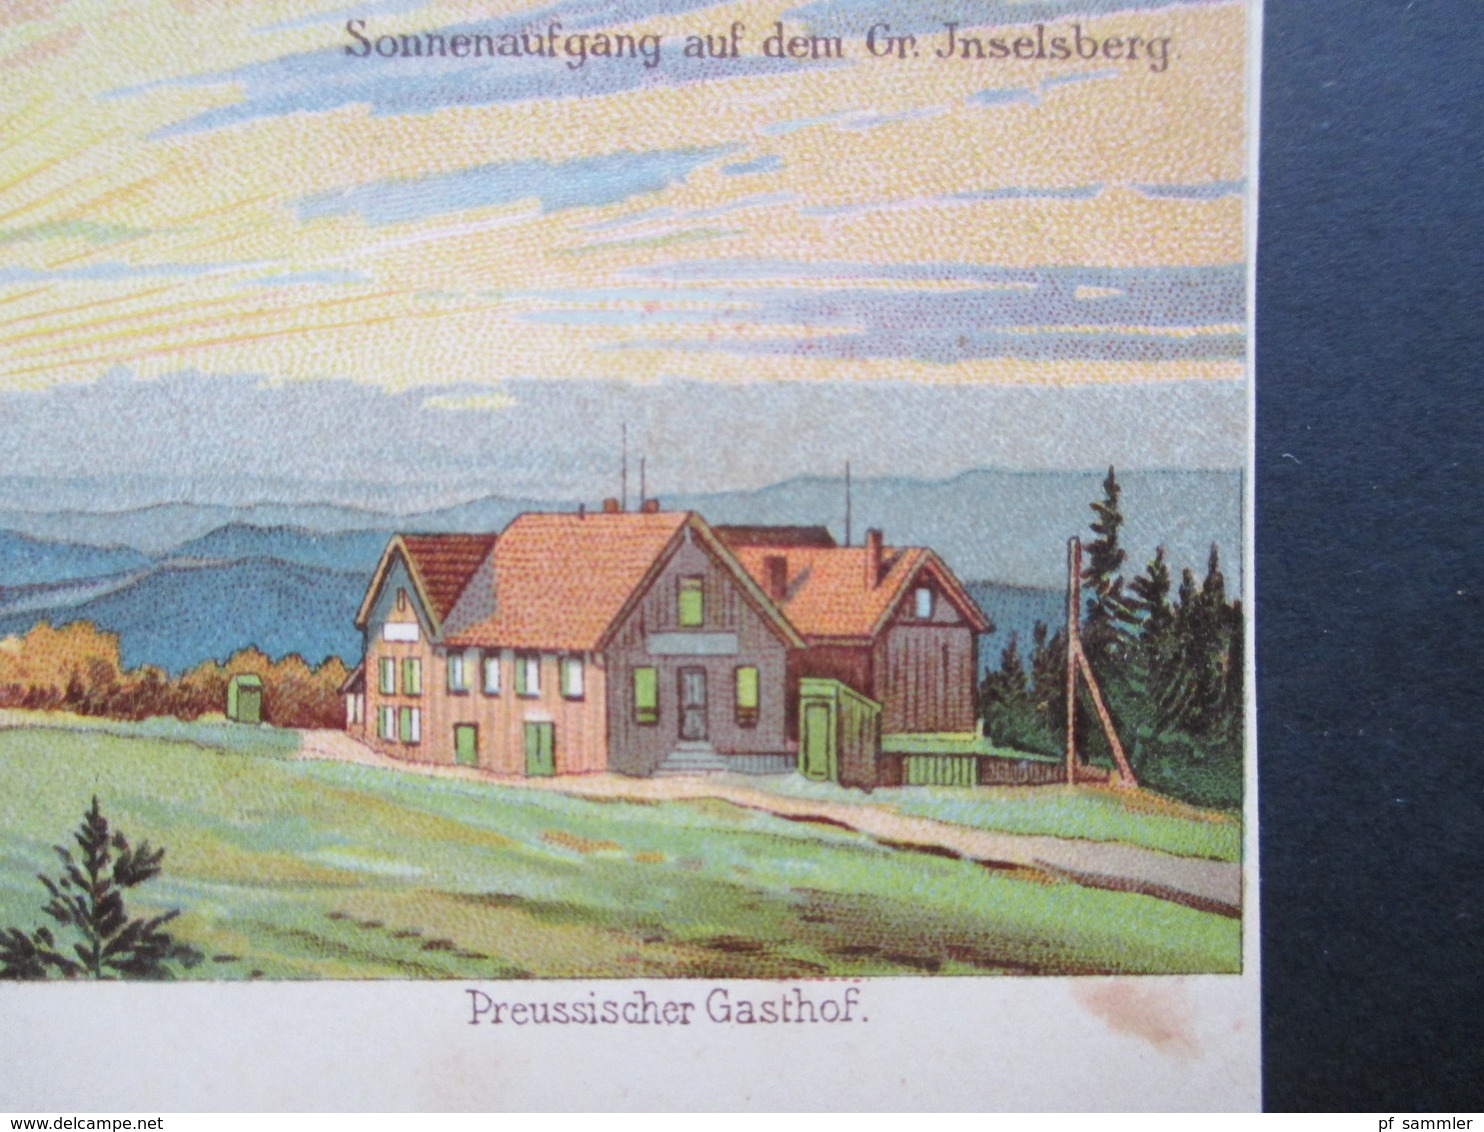 AK Litho Um 1900 Gruss Vom Grossen Inselsberg In Thüringen. Preussischer Gasthof. Sonnenaufgang - Gruss Aus.../ Gruesse Aus...